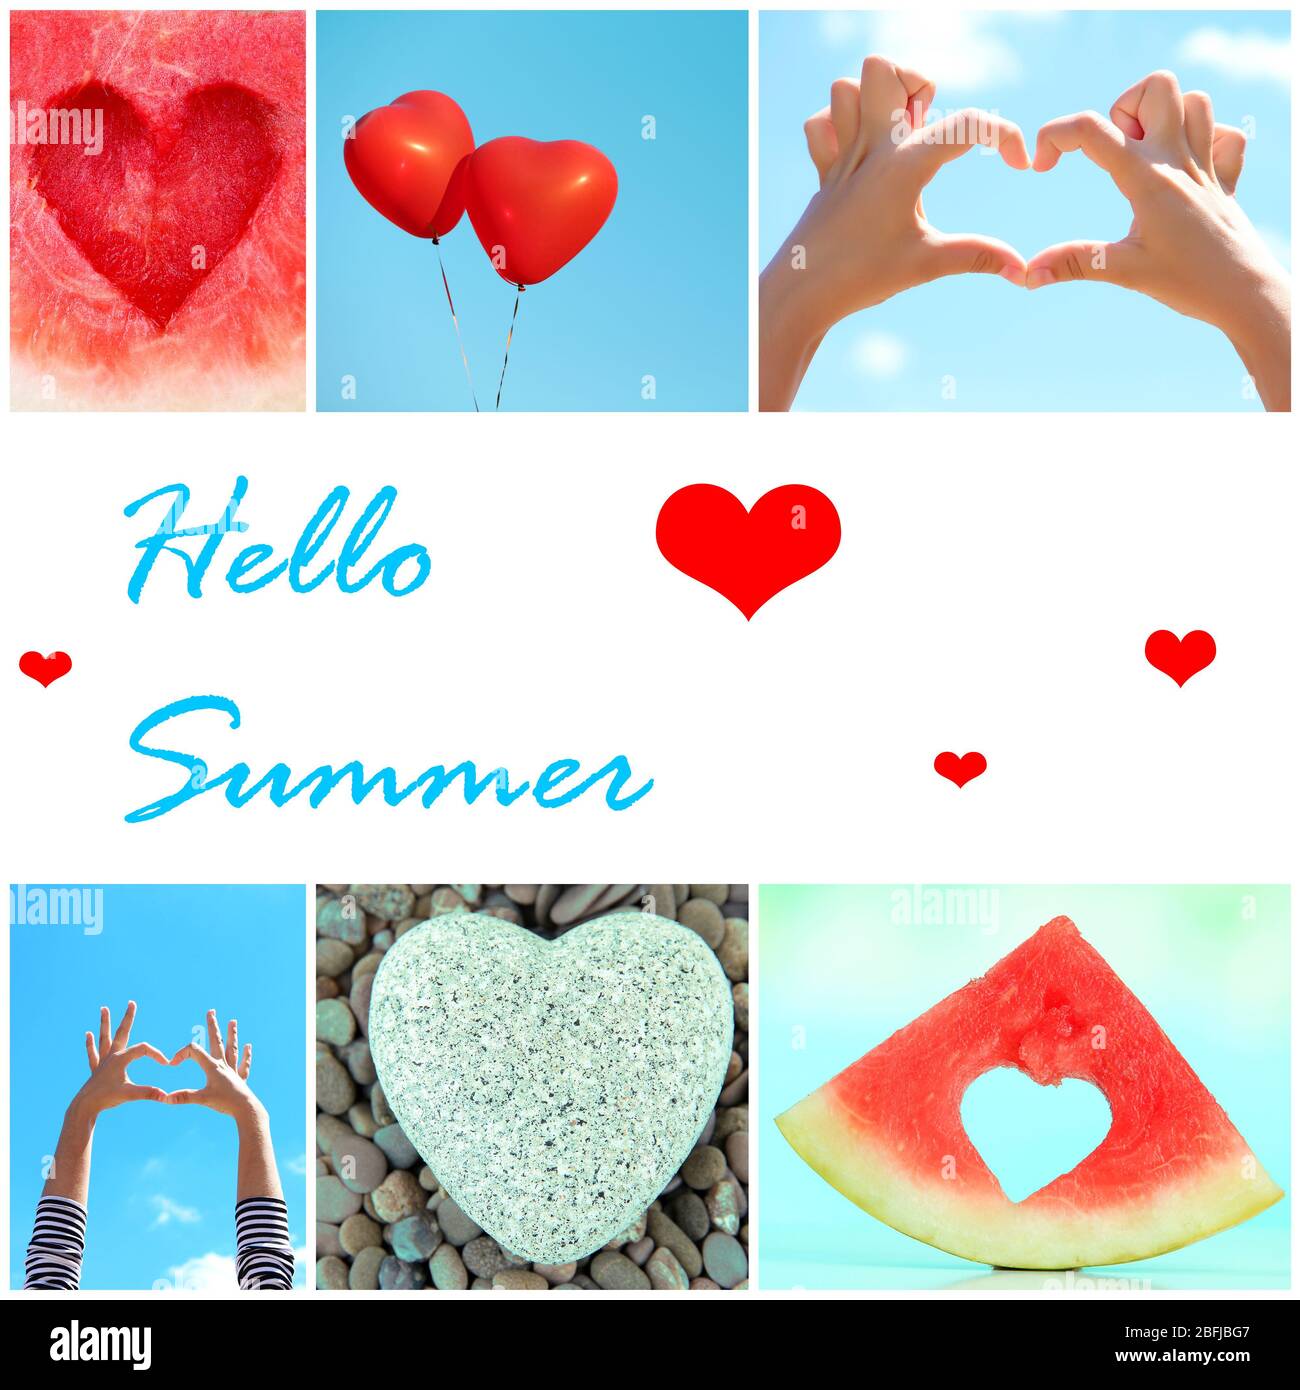 Hallo Sommer Konzept. Collage aus Bildern mit verschiedenen Herzen. Stockfoto